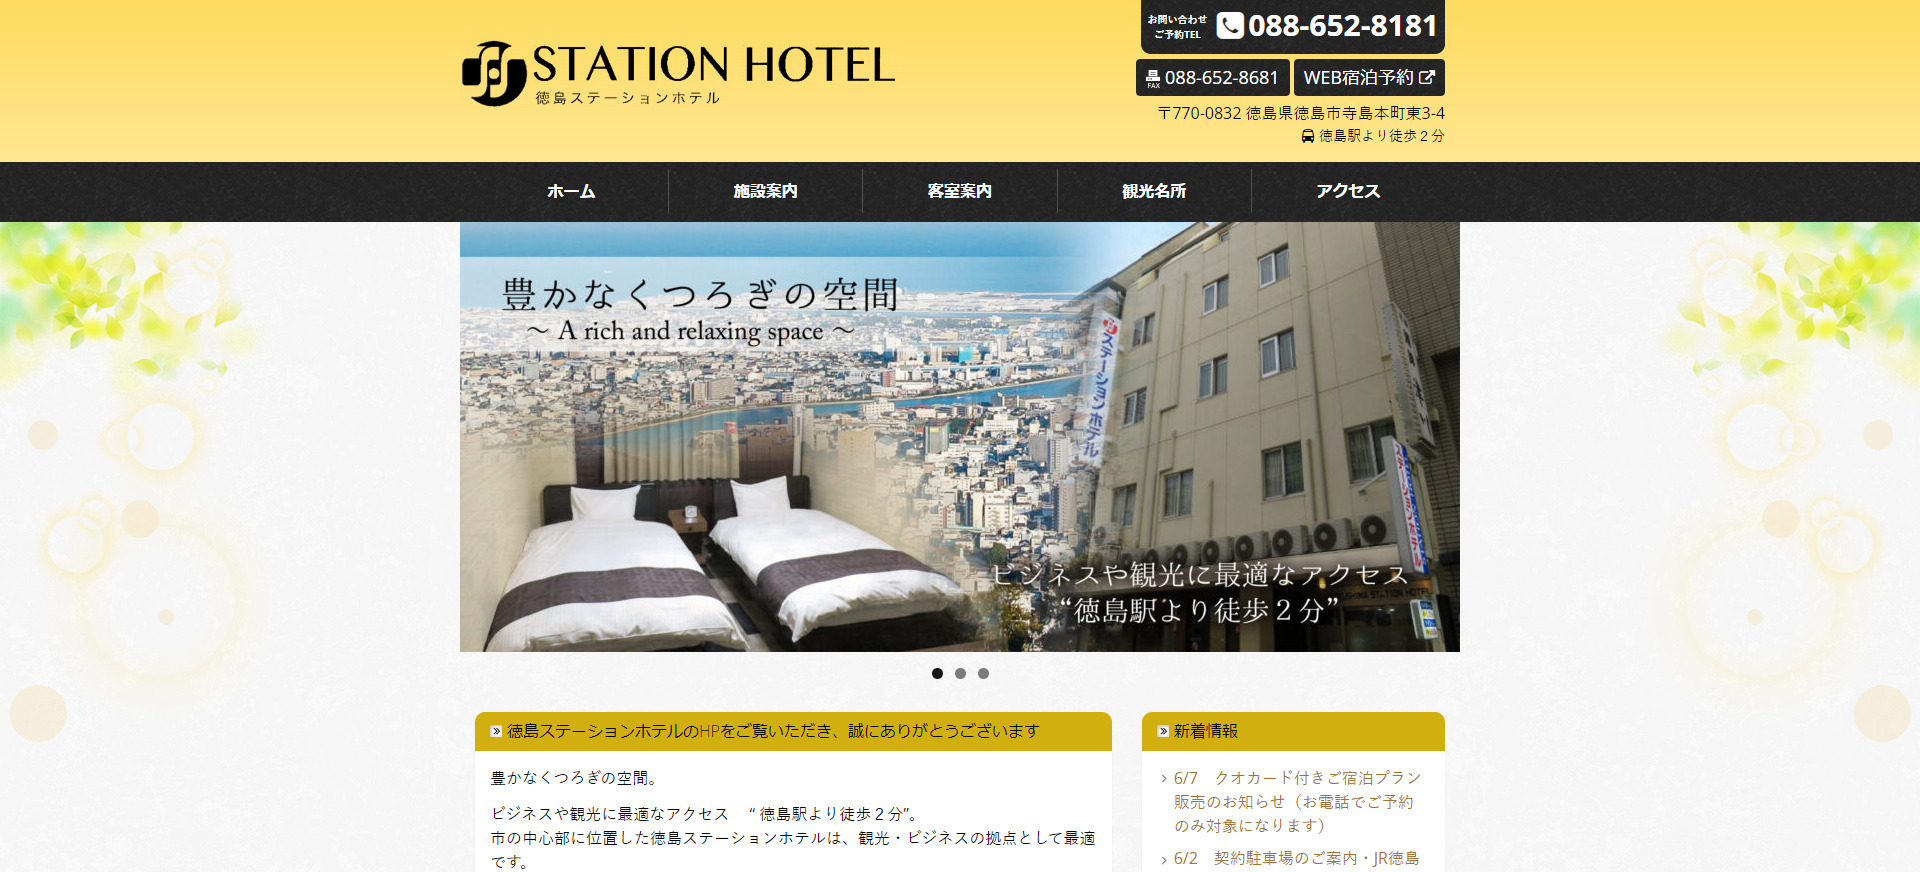 FireShot Capture 059 - ホーム - ・徳島ステーションホテル - tokushima-stationhotel.com